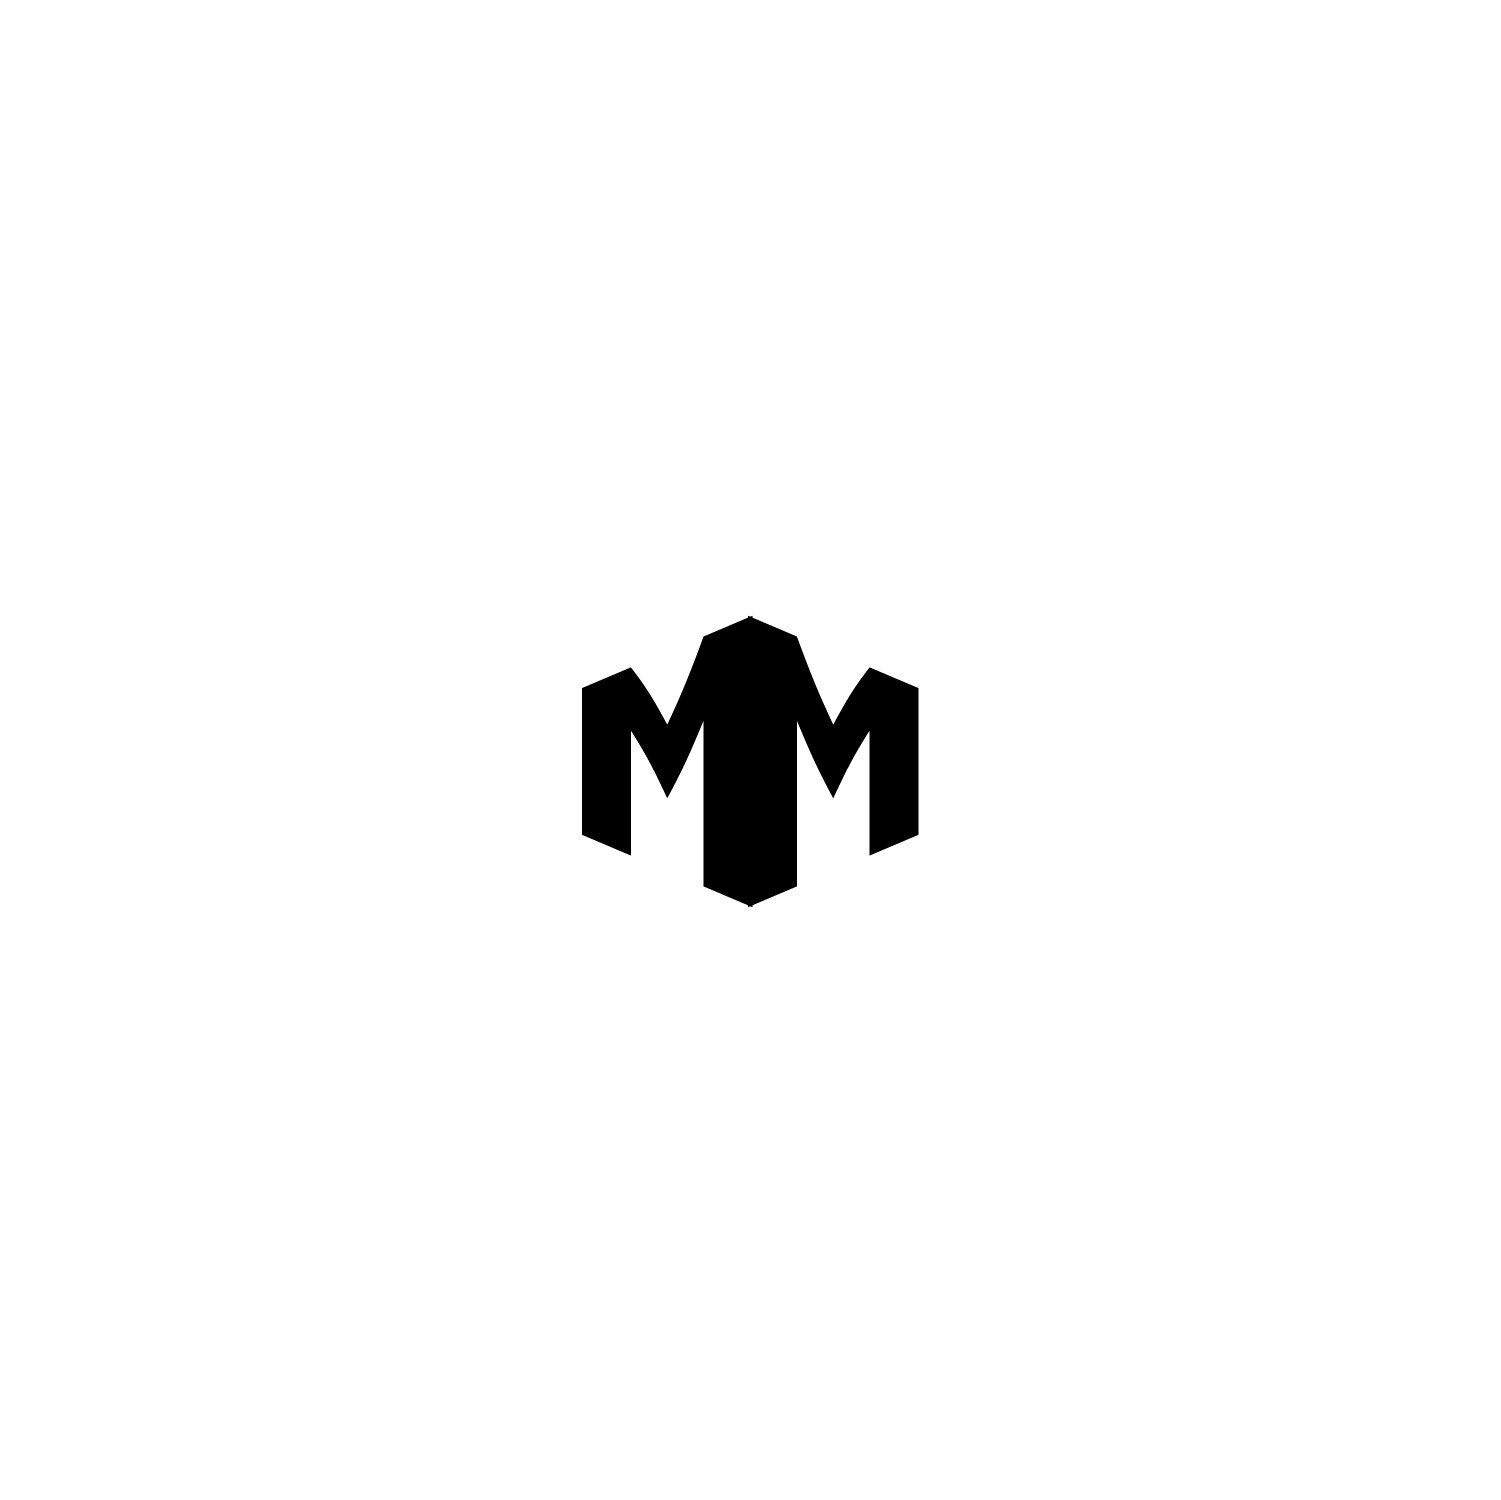 ArtStation - Double M logo concept